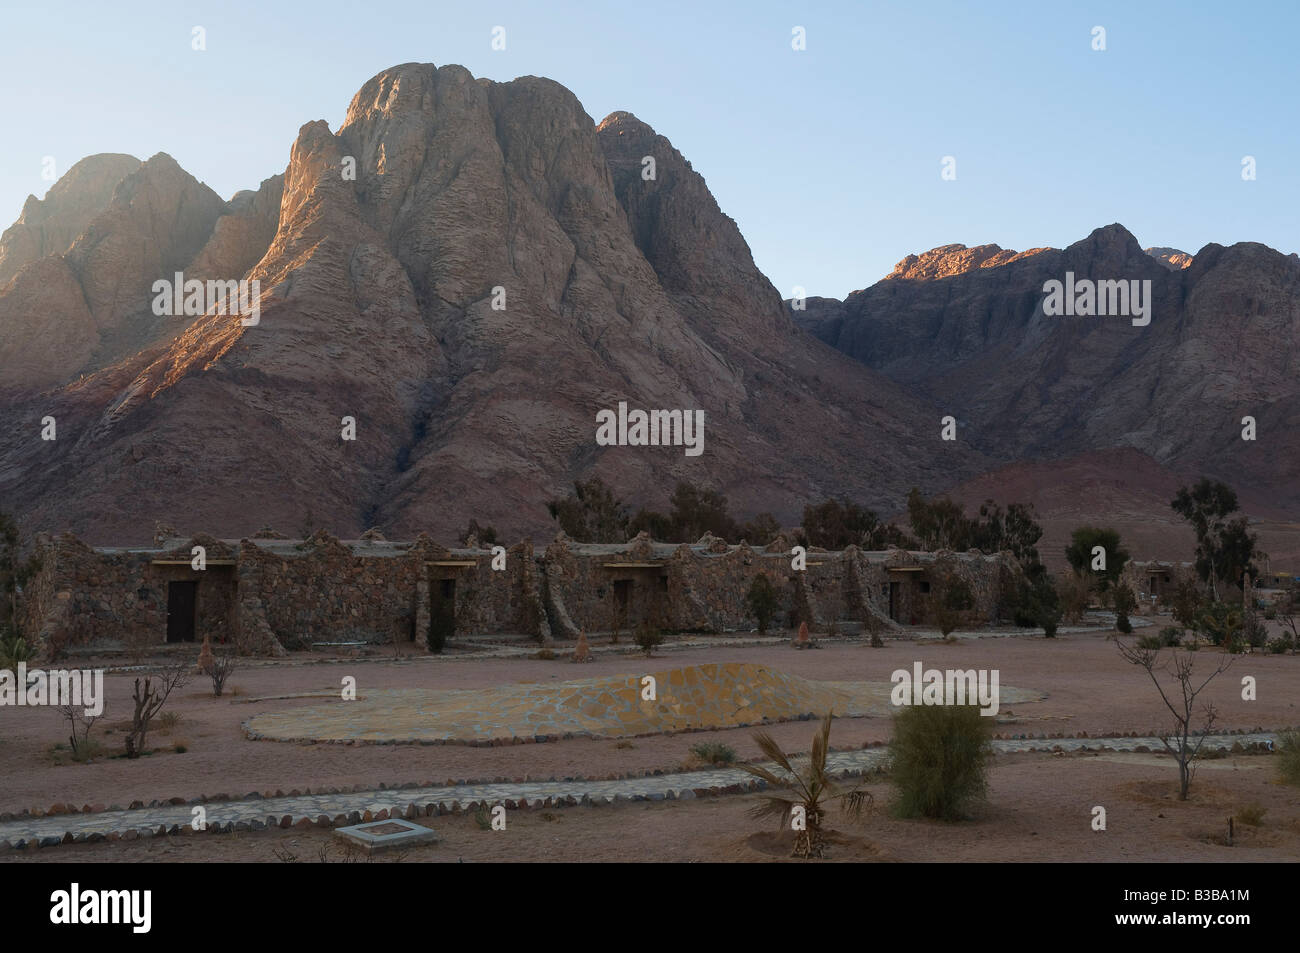 Mount Sinai, Sinai, Egypt Stock Photo